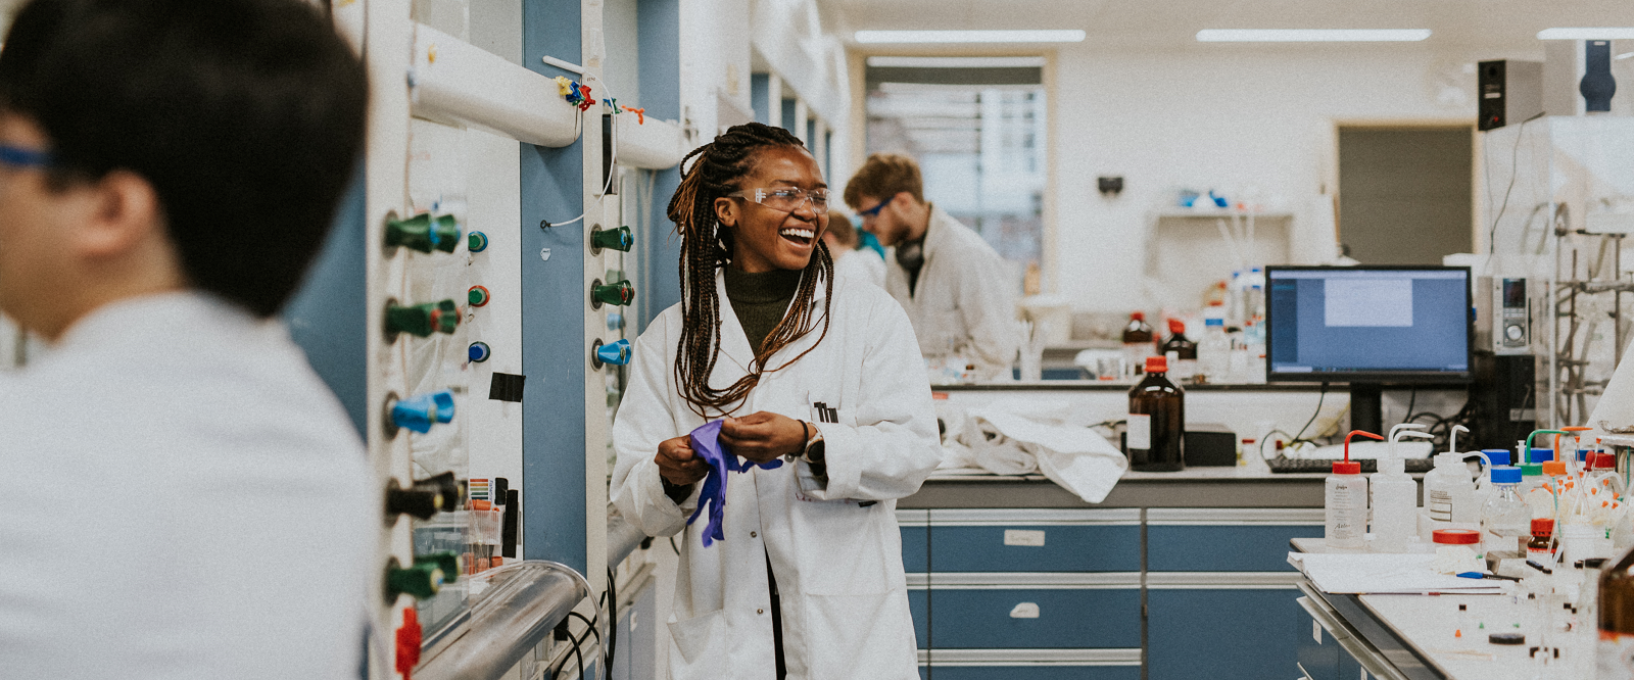 布里斯托尔大学化学学院的研究人员戴上防护手套时，实验室露出笑容